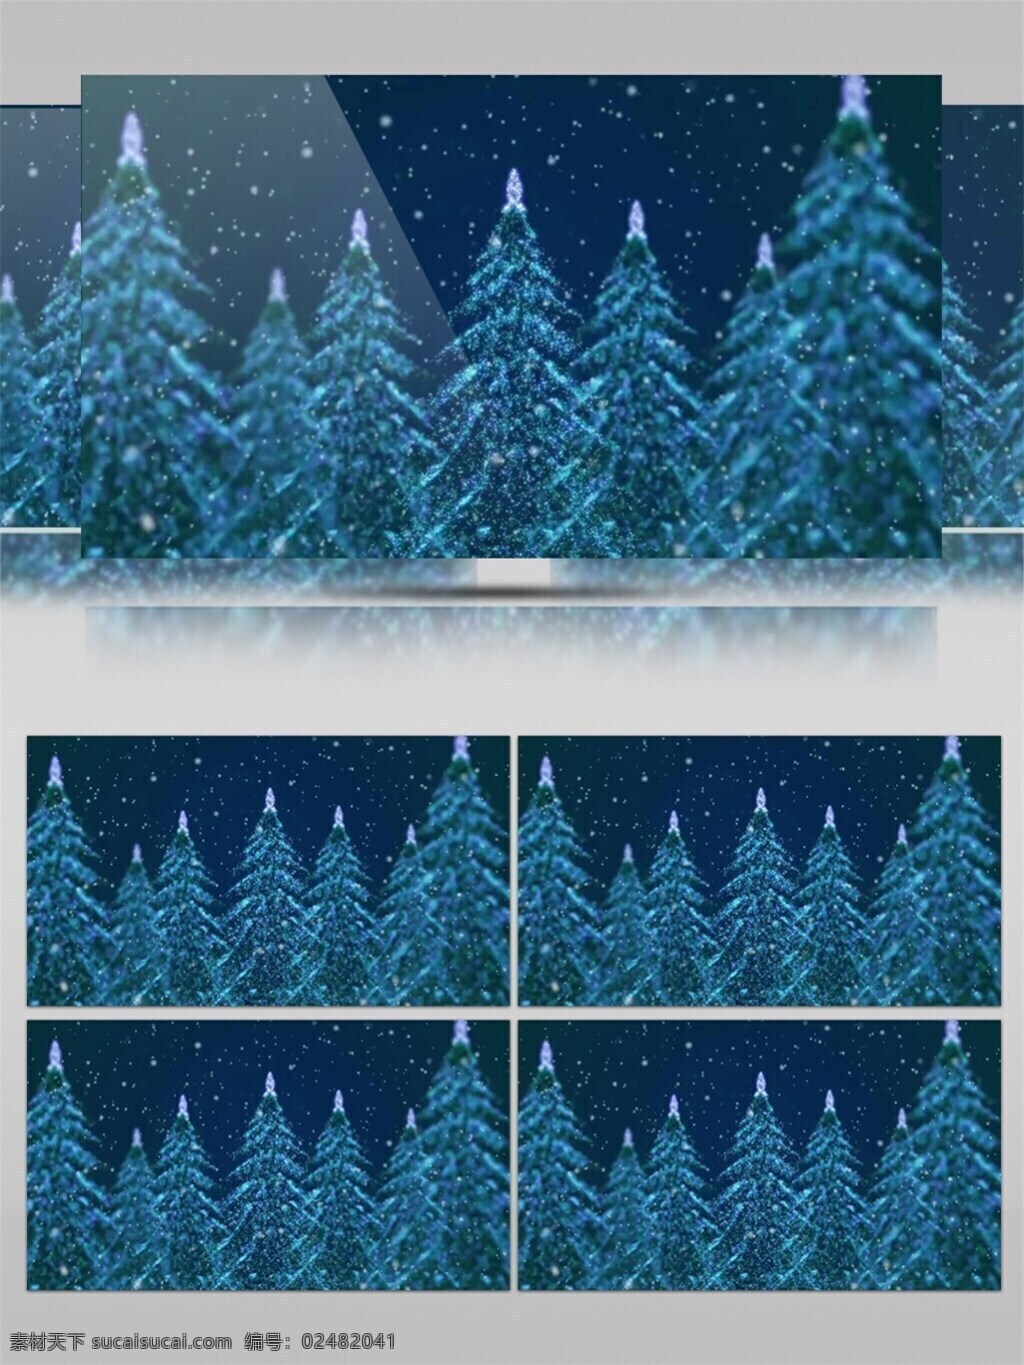 夜色 森林 圣诞节 视频 高质量 背景 节日背景素材 美景动态背景 森林景色 优雅景色